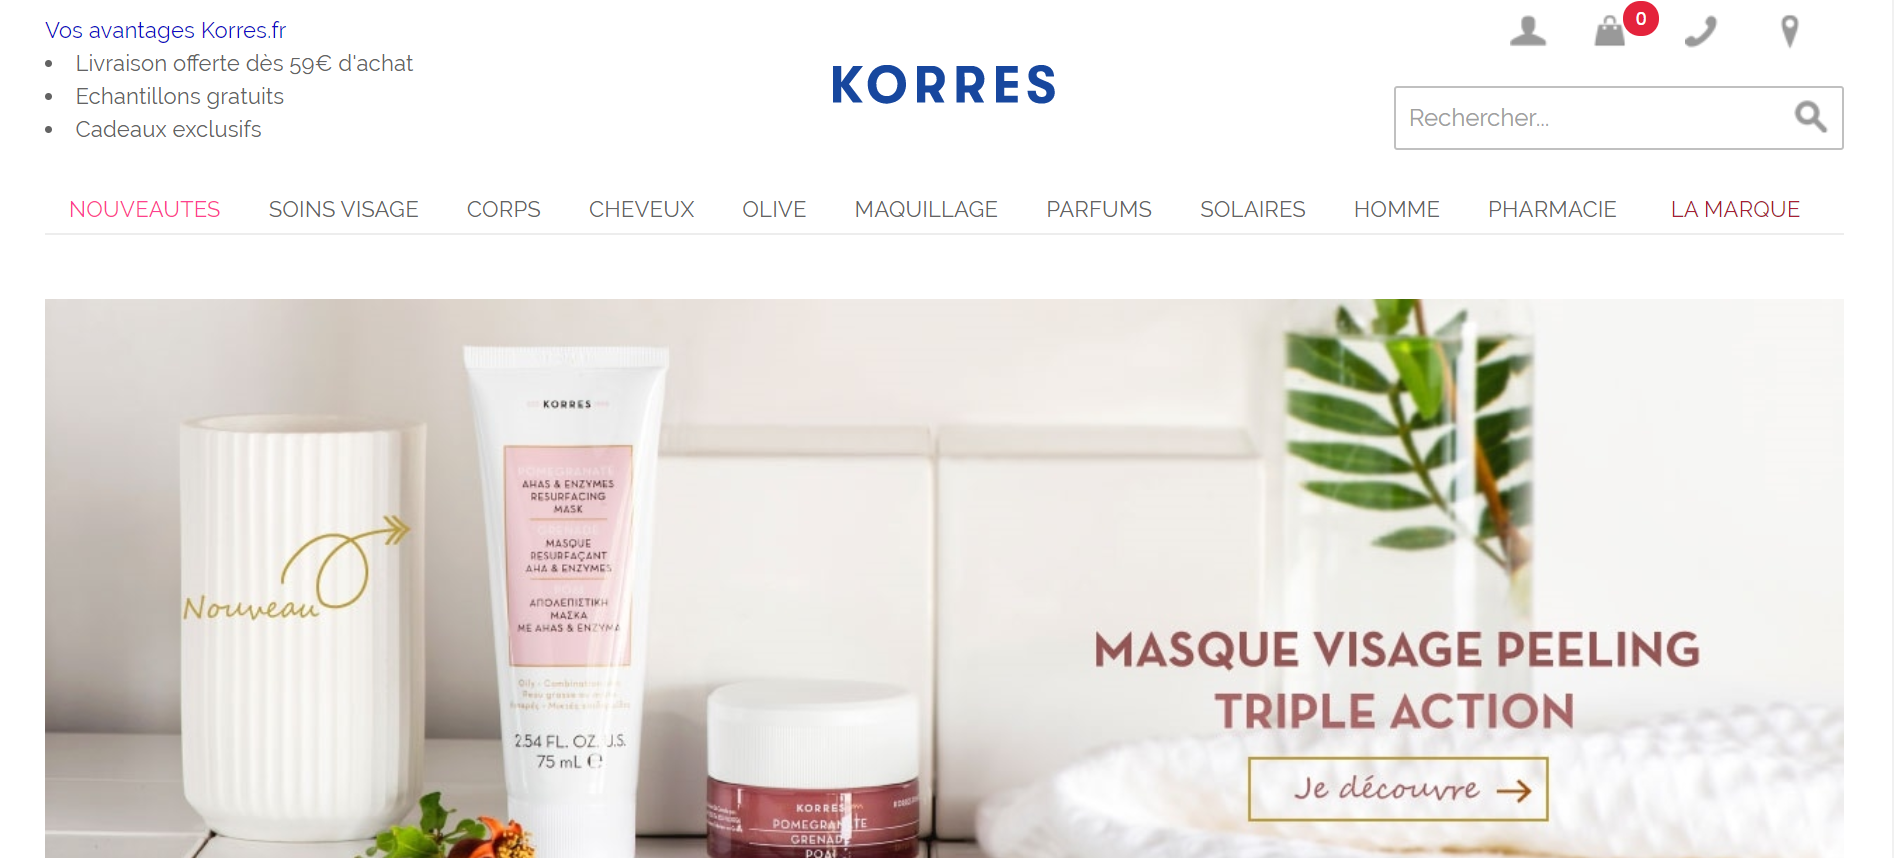 希腊药妆品牌 Korres 去年营收增长16%，着手布局欧洲和美洲市场